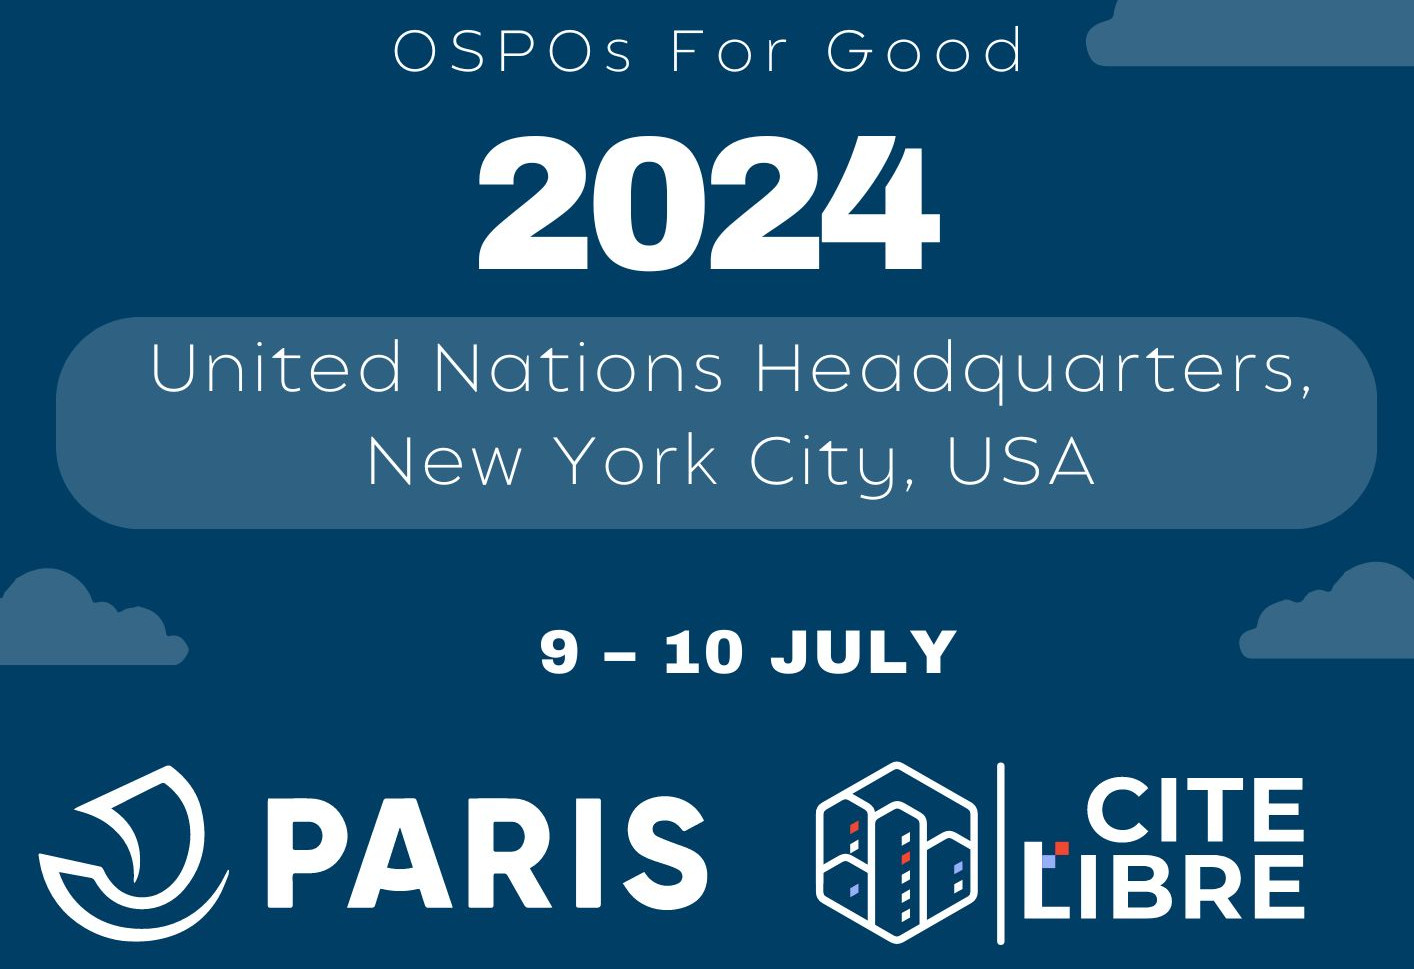 La Ville de Paris au symposium OSPOs For Good